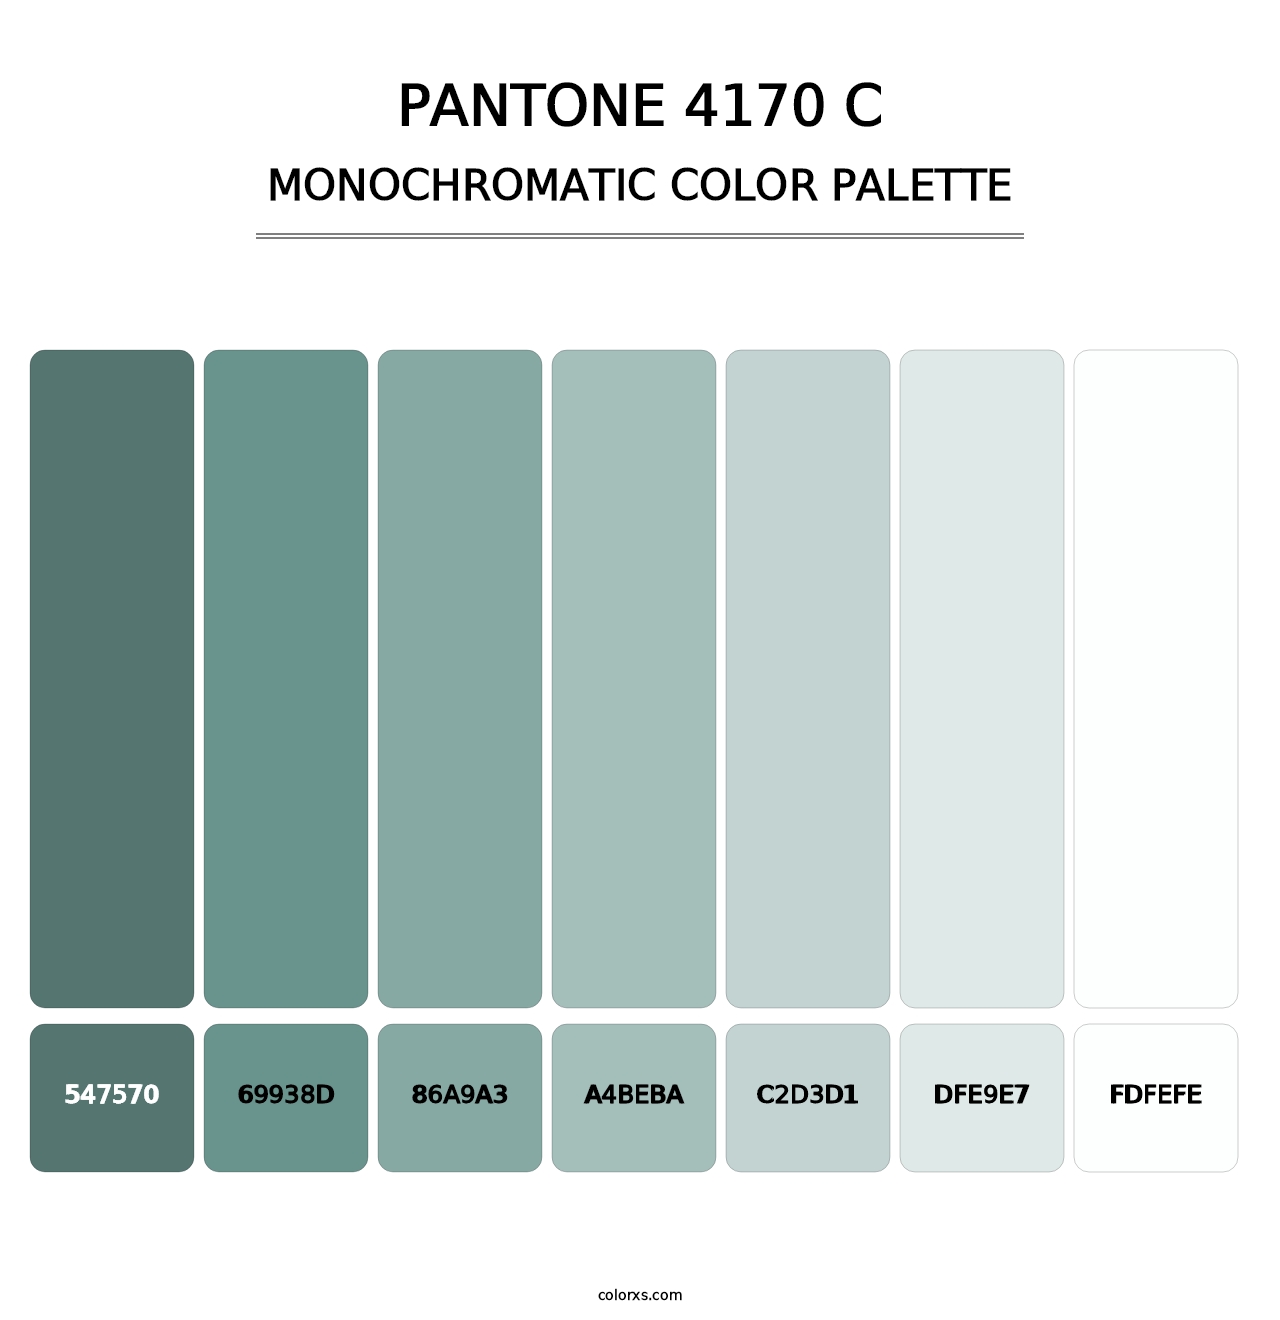 PANTONE 4170 C - Monochromatic Color Palette